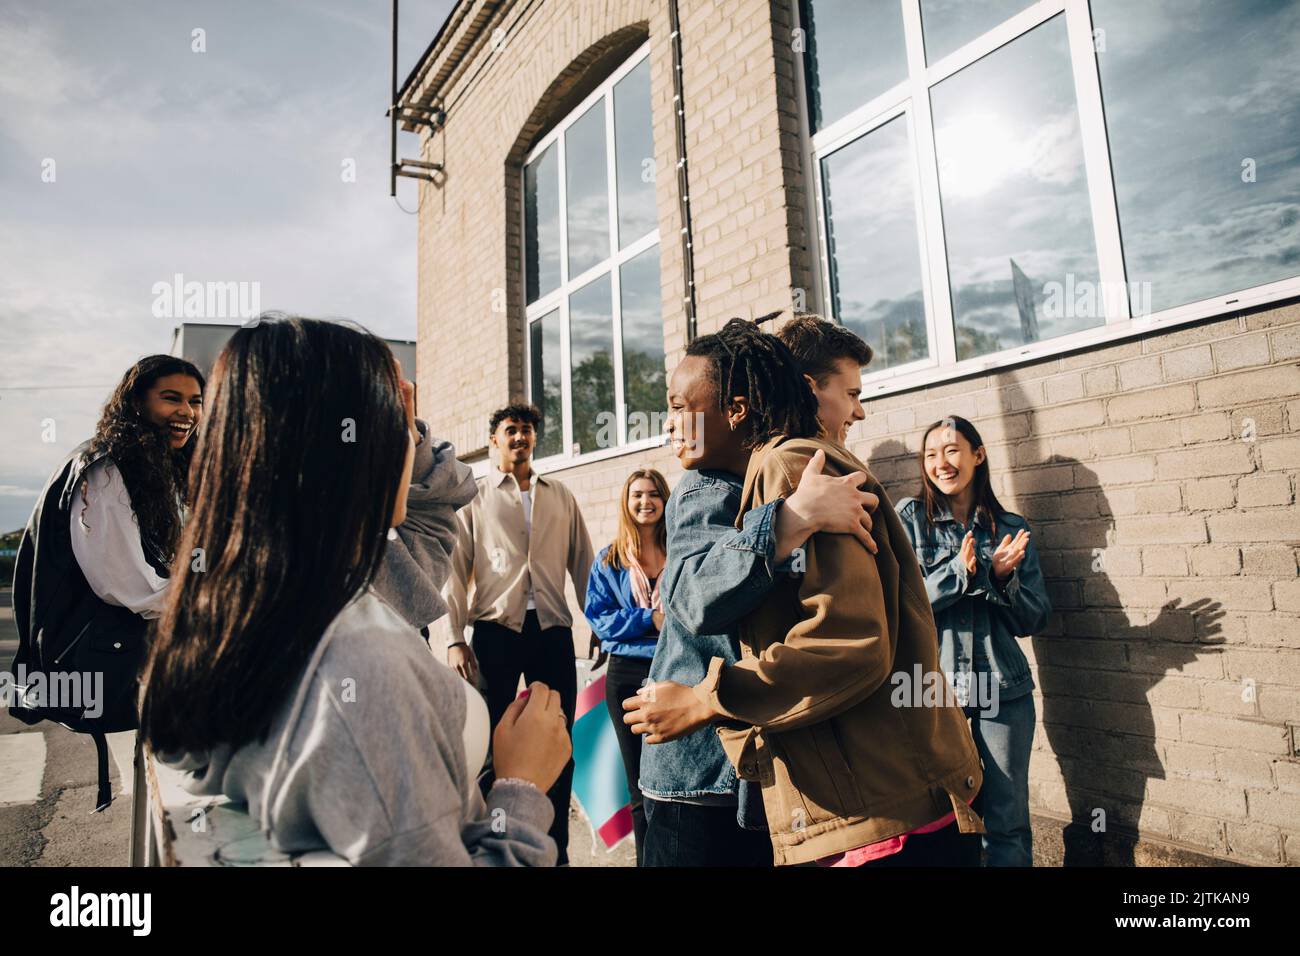 Jeune homme souriant embrassant une femme par des amis à l'extérieur du bâtiment Banque D'Images